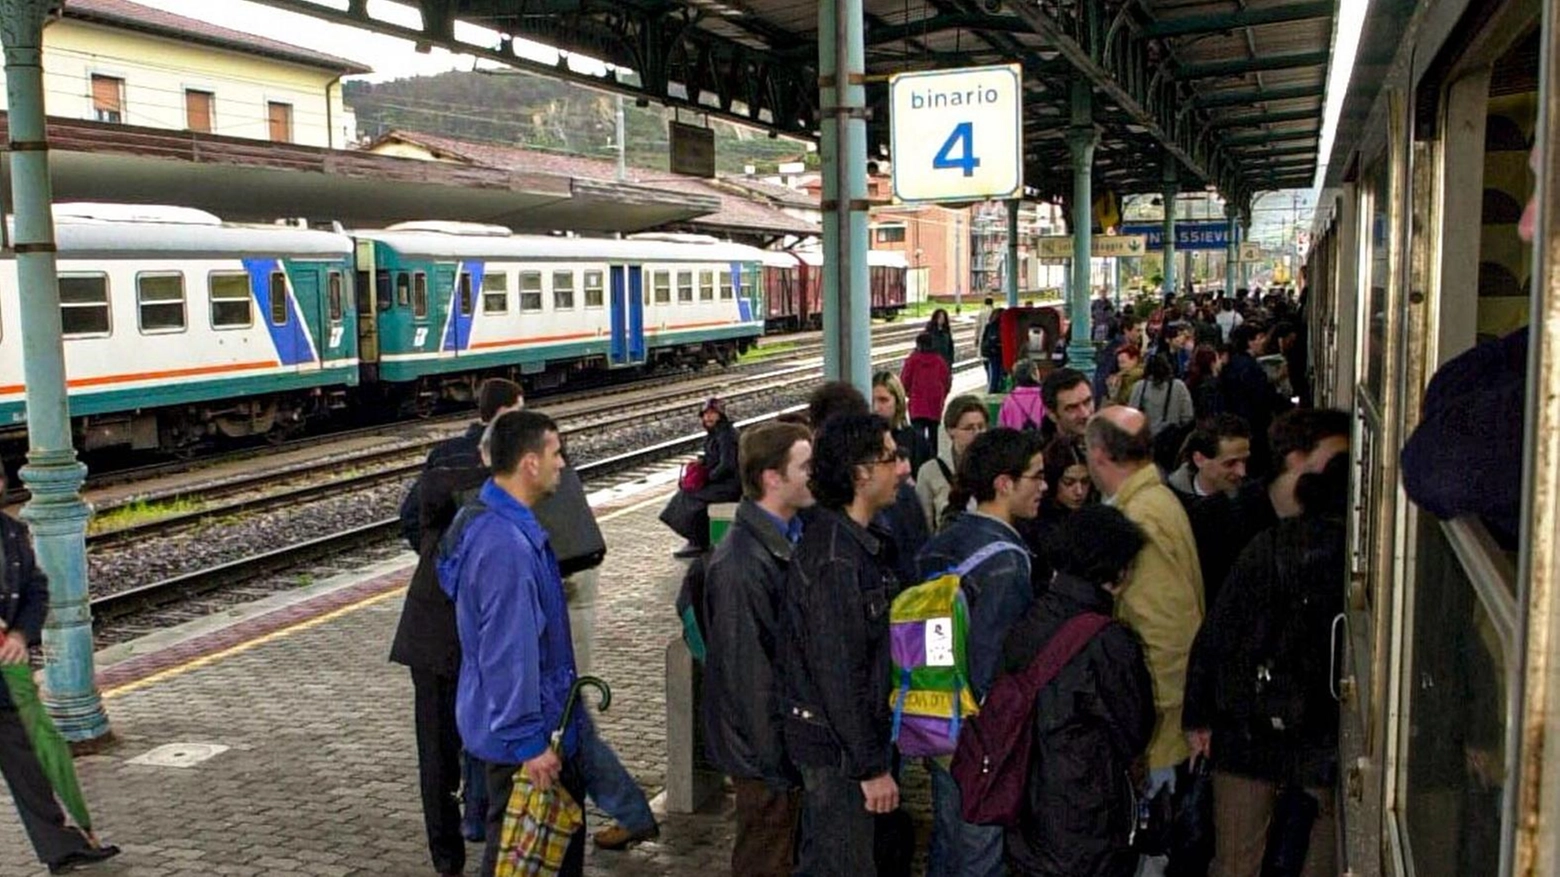 L’87% degli utenti ha respinto la richiesta di ritardare di 10 minuti la partenza del treno da Firenze delle 17.14. Da Re: "I viaggiatori non sono convinti, cambiamenti che non evitano interferenze sulla Direttissima".